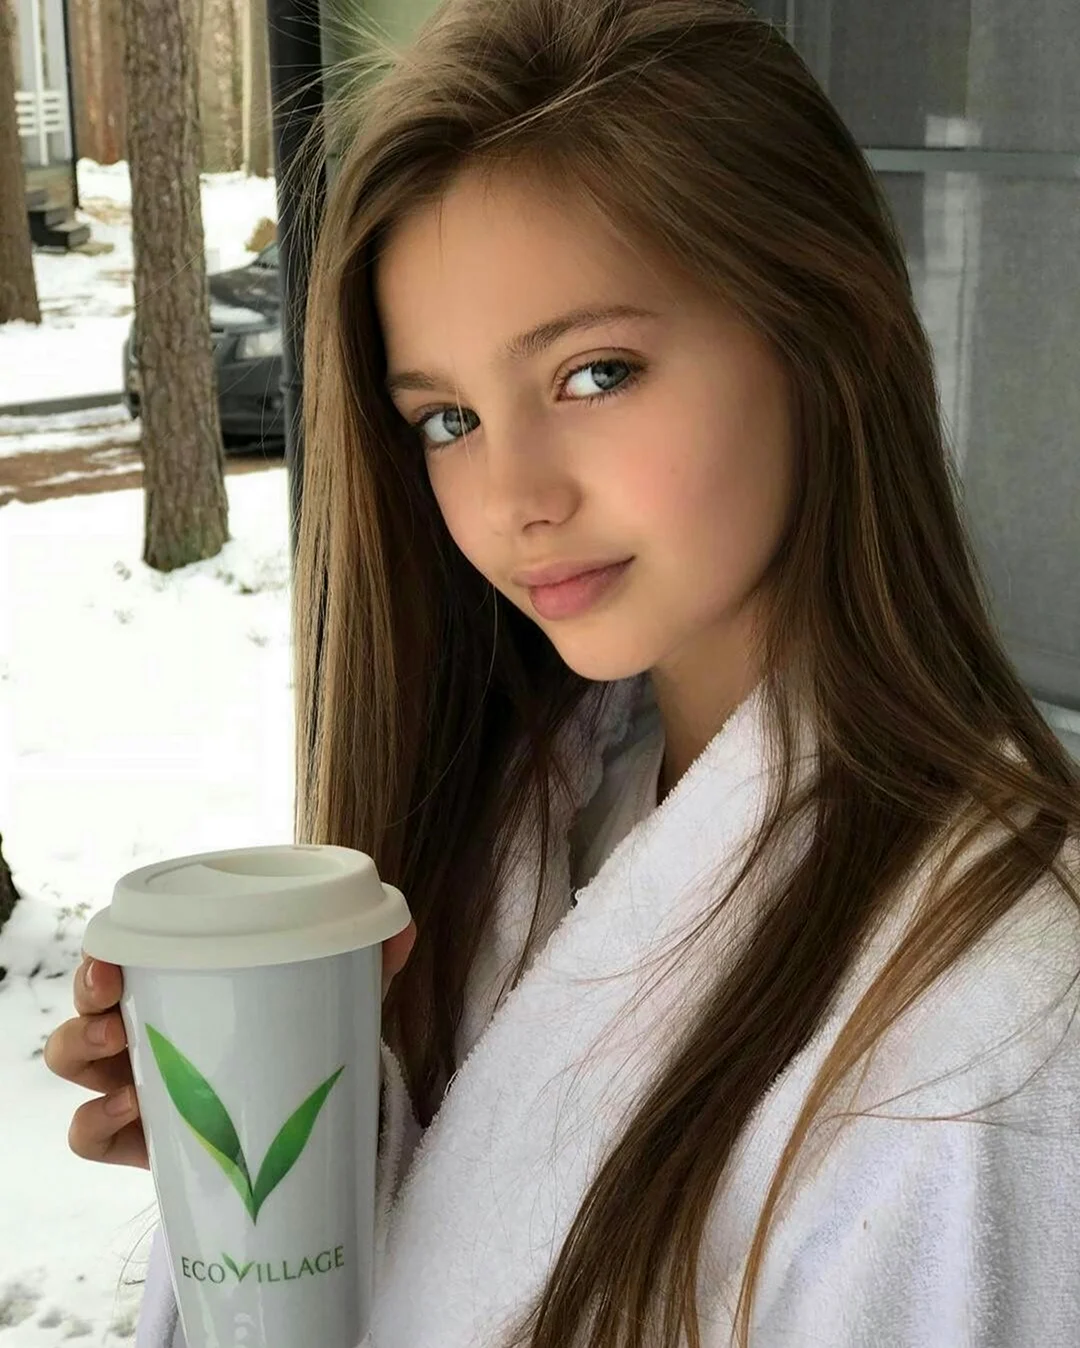 Яна Козлова модель 2020. Красивая девушка